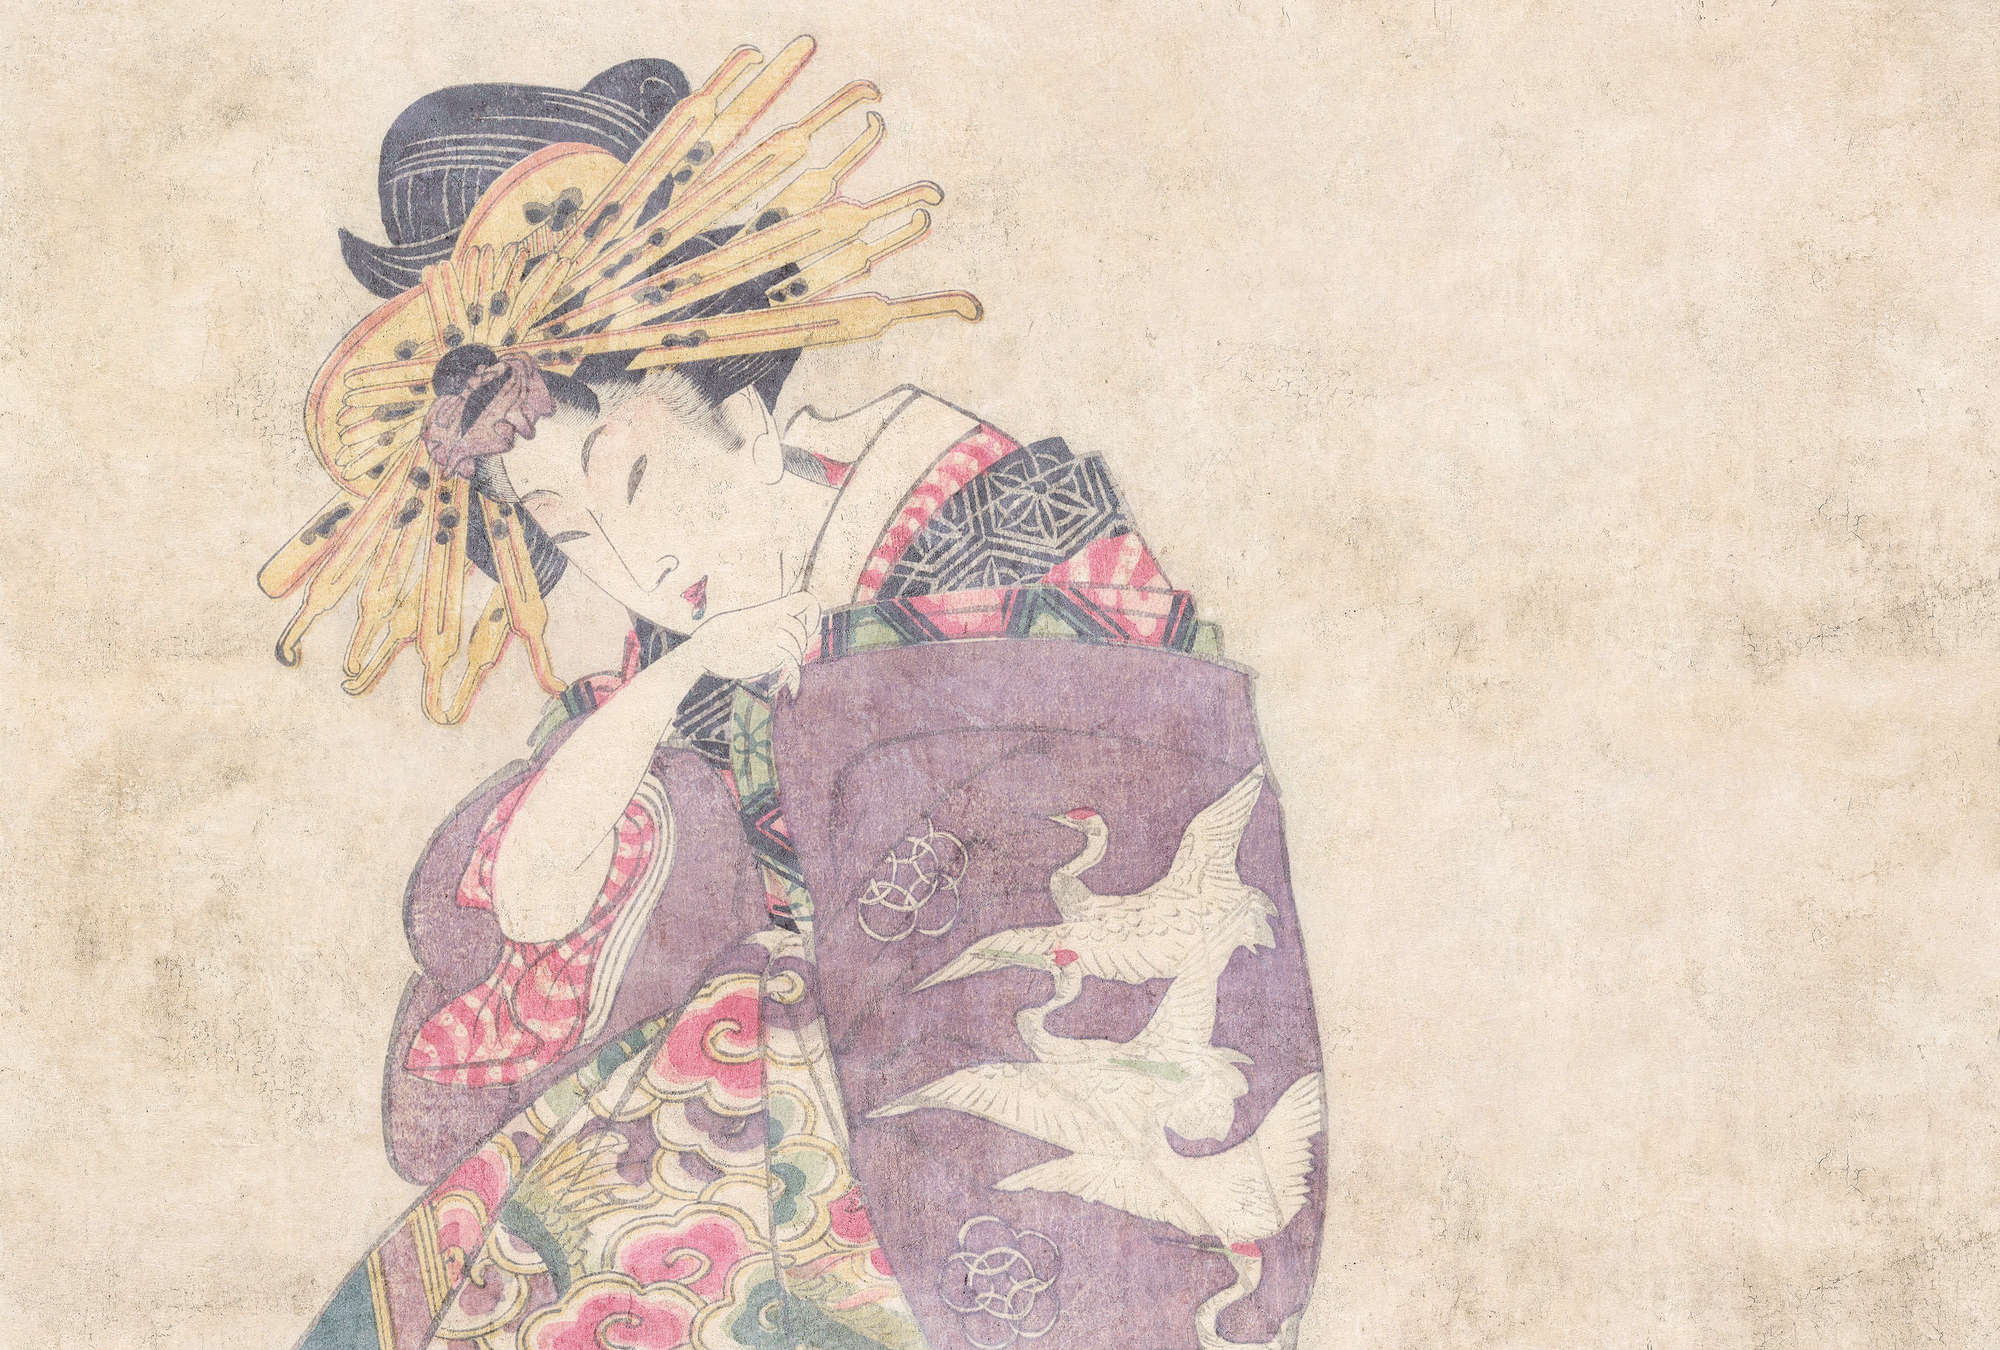             Osaka 1 - Carta da parati con stampa d'arte e decorazioni asiatiche vintage
        